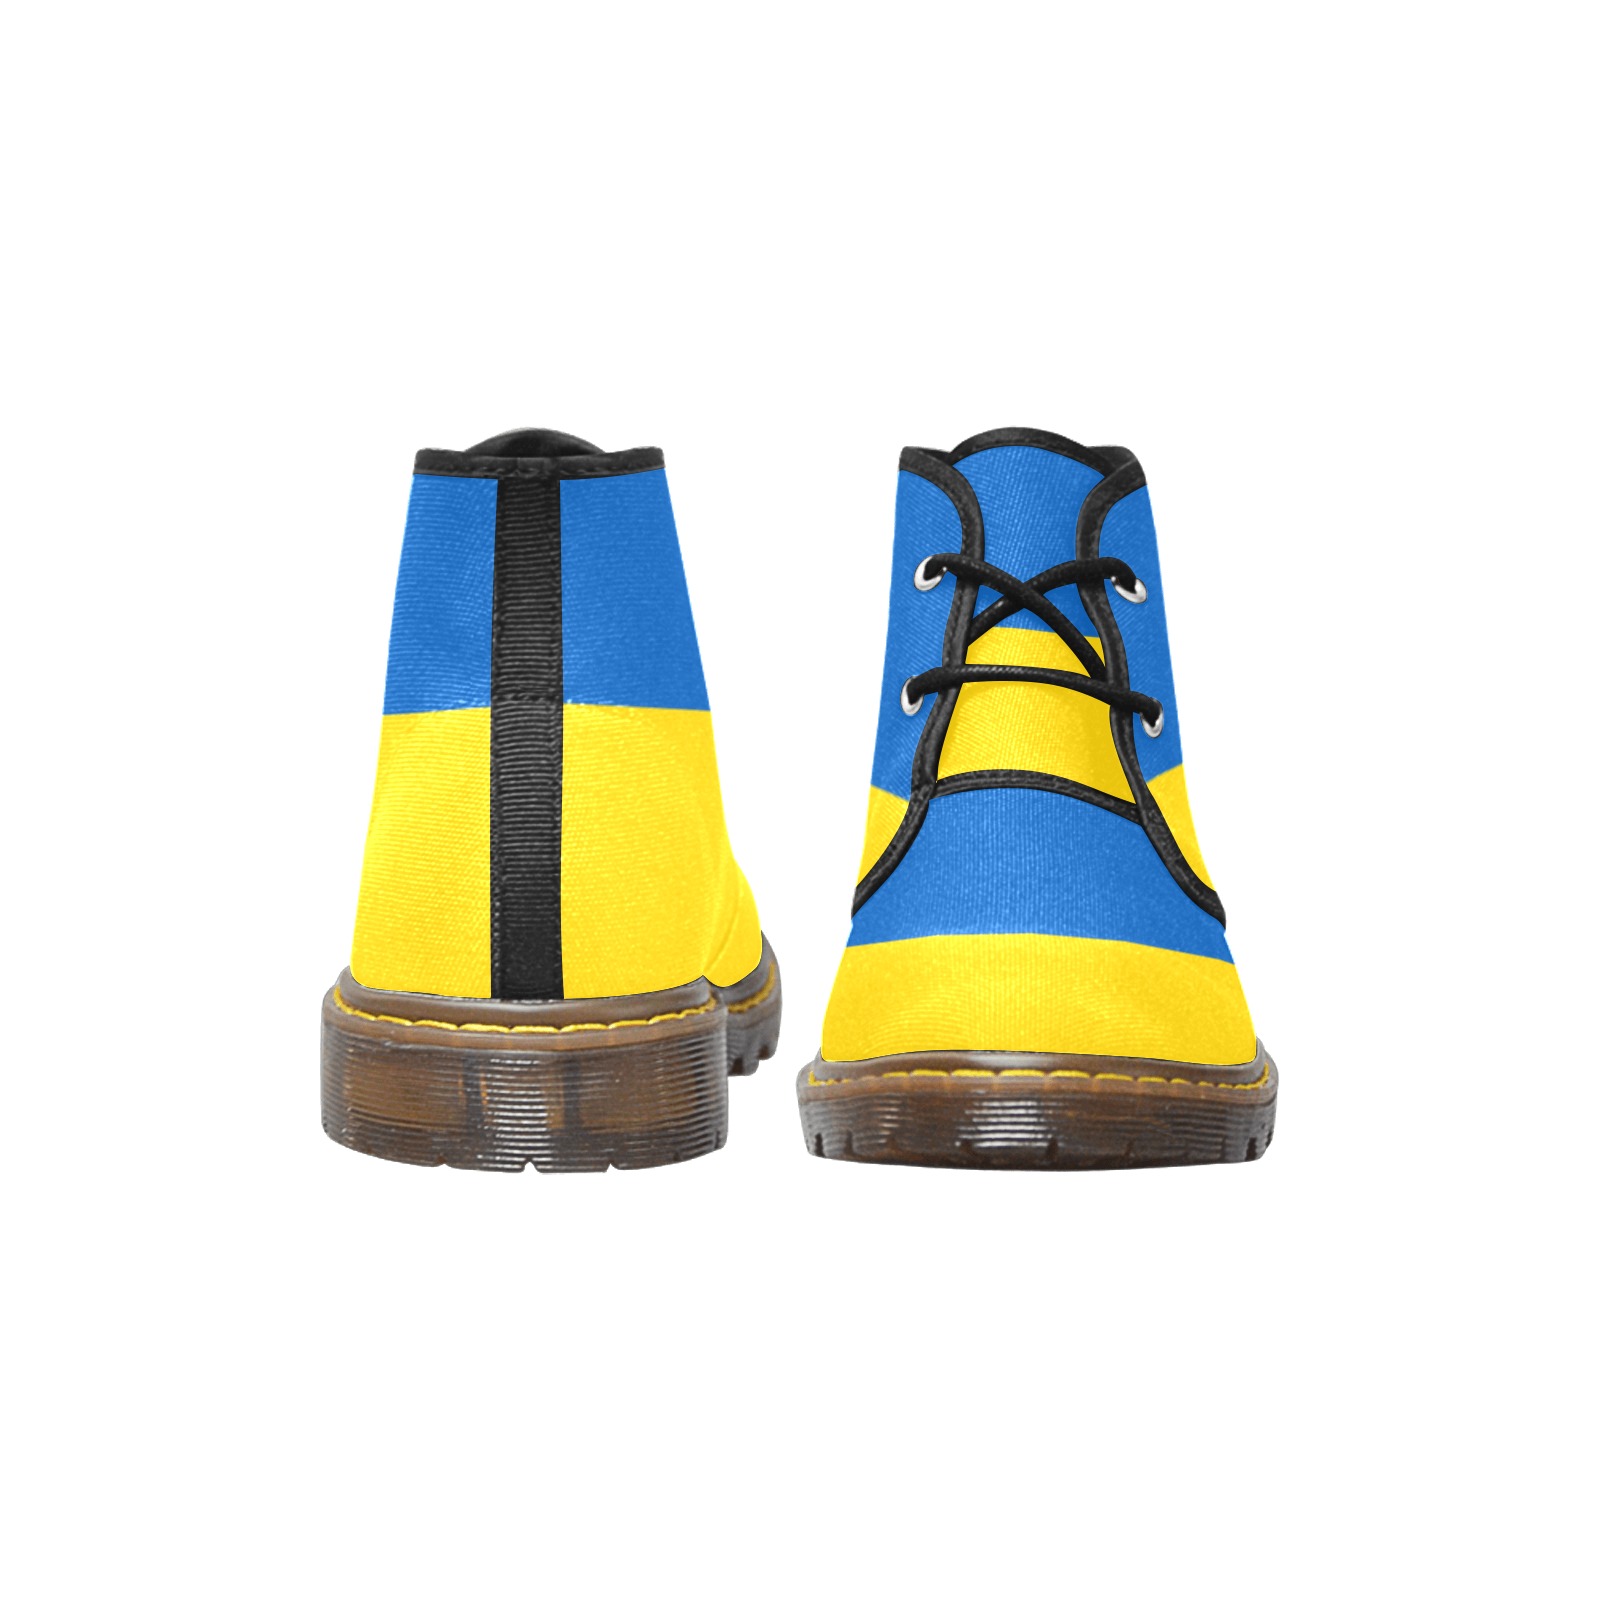 UKRAINE Women's Canvas Chukka Boots (Model 2402-1)